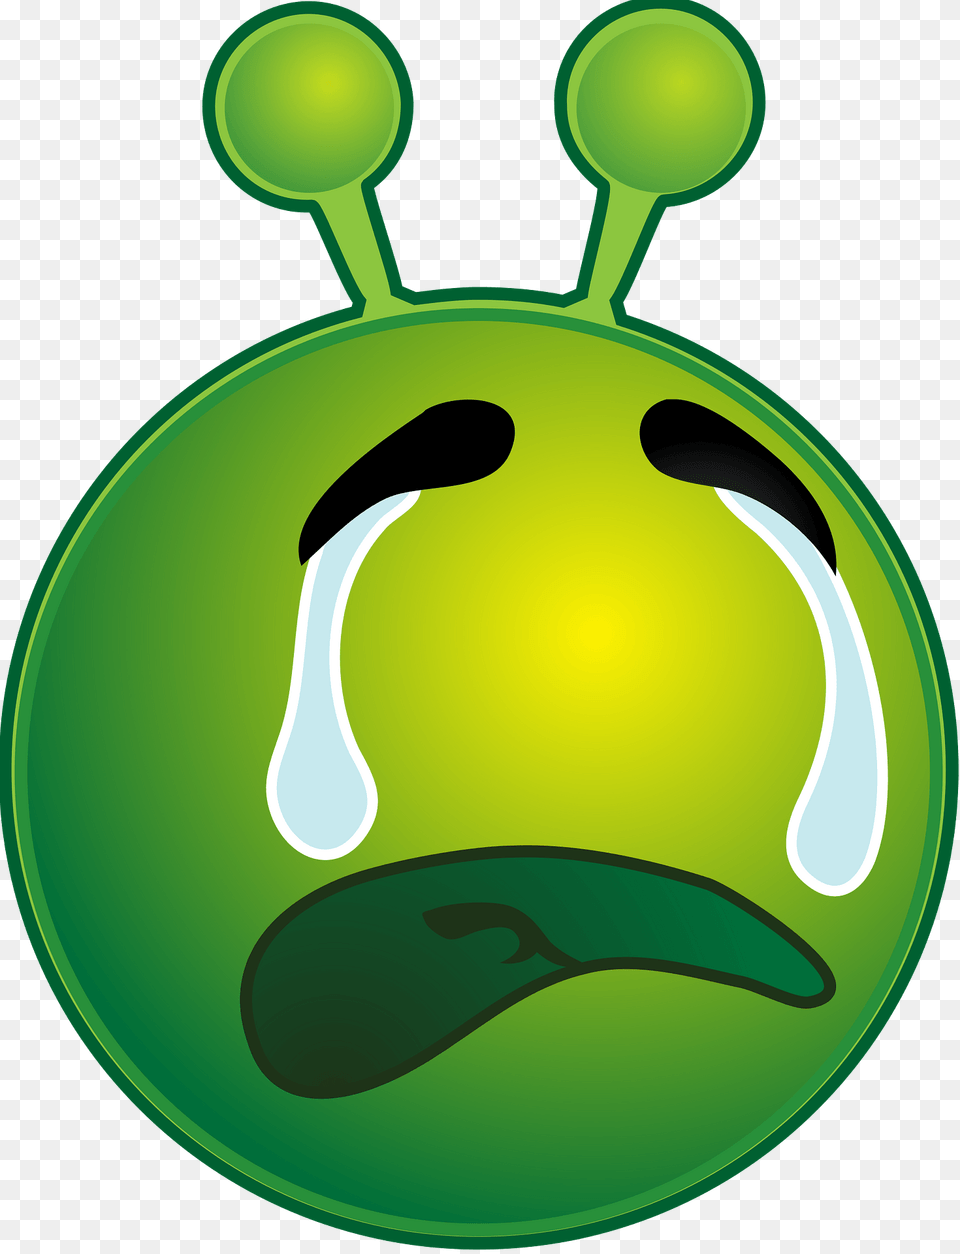 Smiley Green Alien Weep Clipart, Ball, Sport, Tennis, Tennis Ball Free Transparent Png